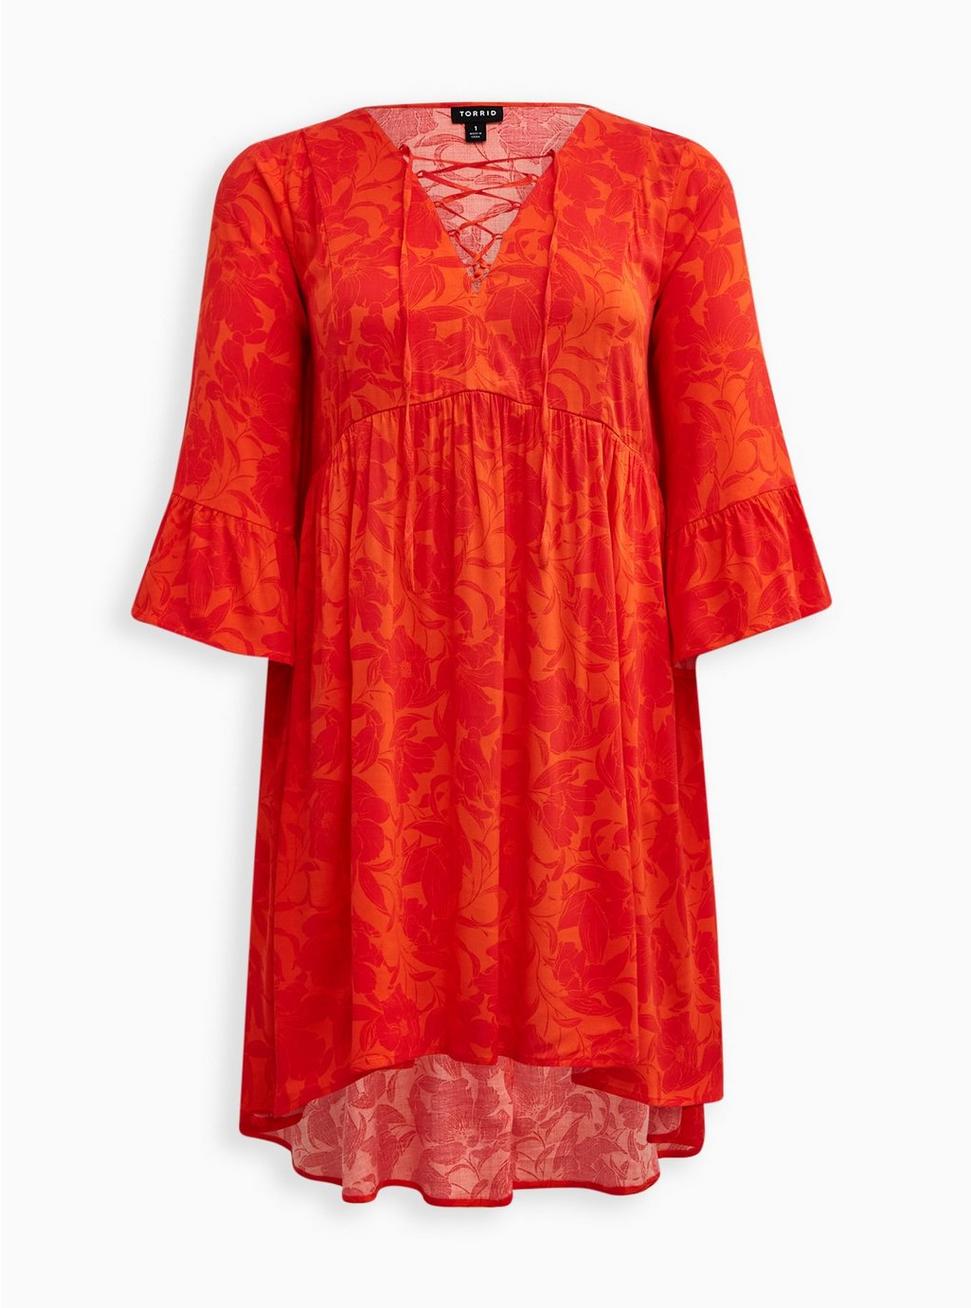 Lace Up Hi-Low Babydoll Dress - Stretch Challis Floral Orange, FLORAL ORANGE, hi-res